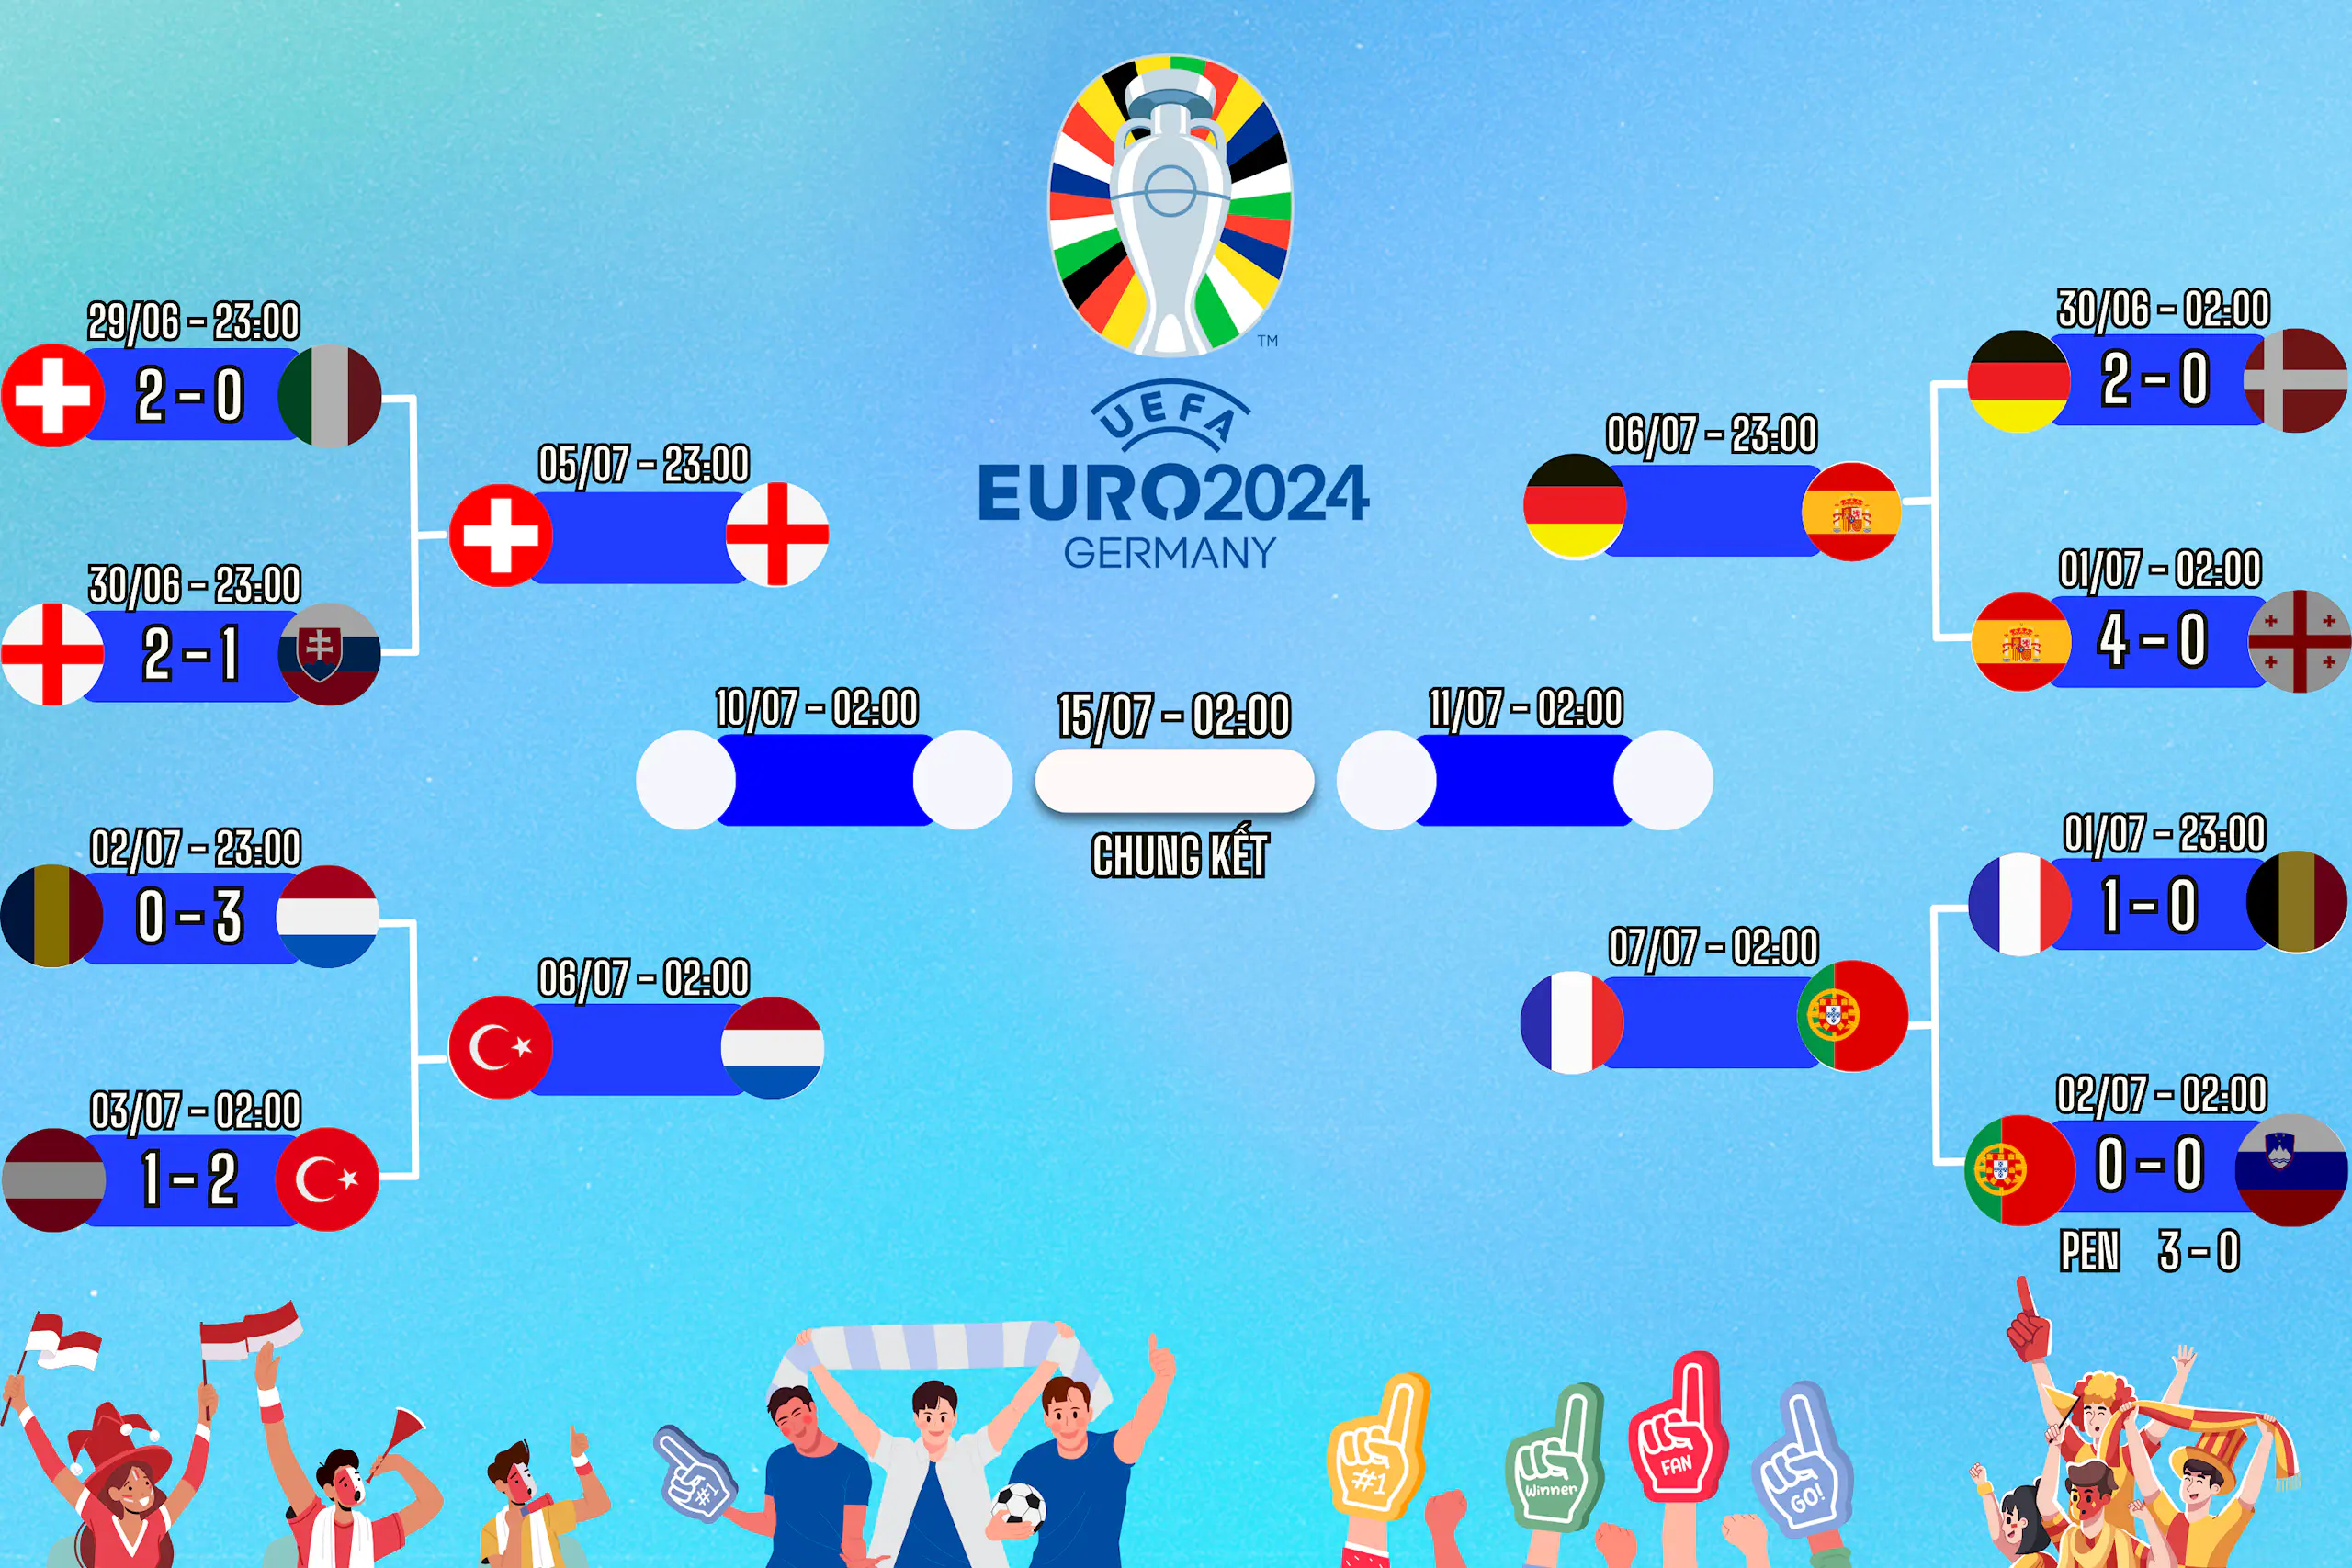 Lịch thi đấu EURO 2024 vòng 1/8 ngày 02/07, cập nhật kết quả và dự đoán tỉ số trận đấu cùng Congngheviet